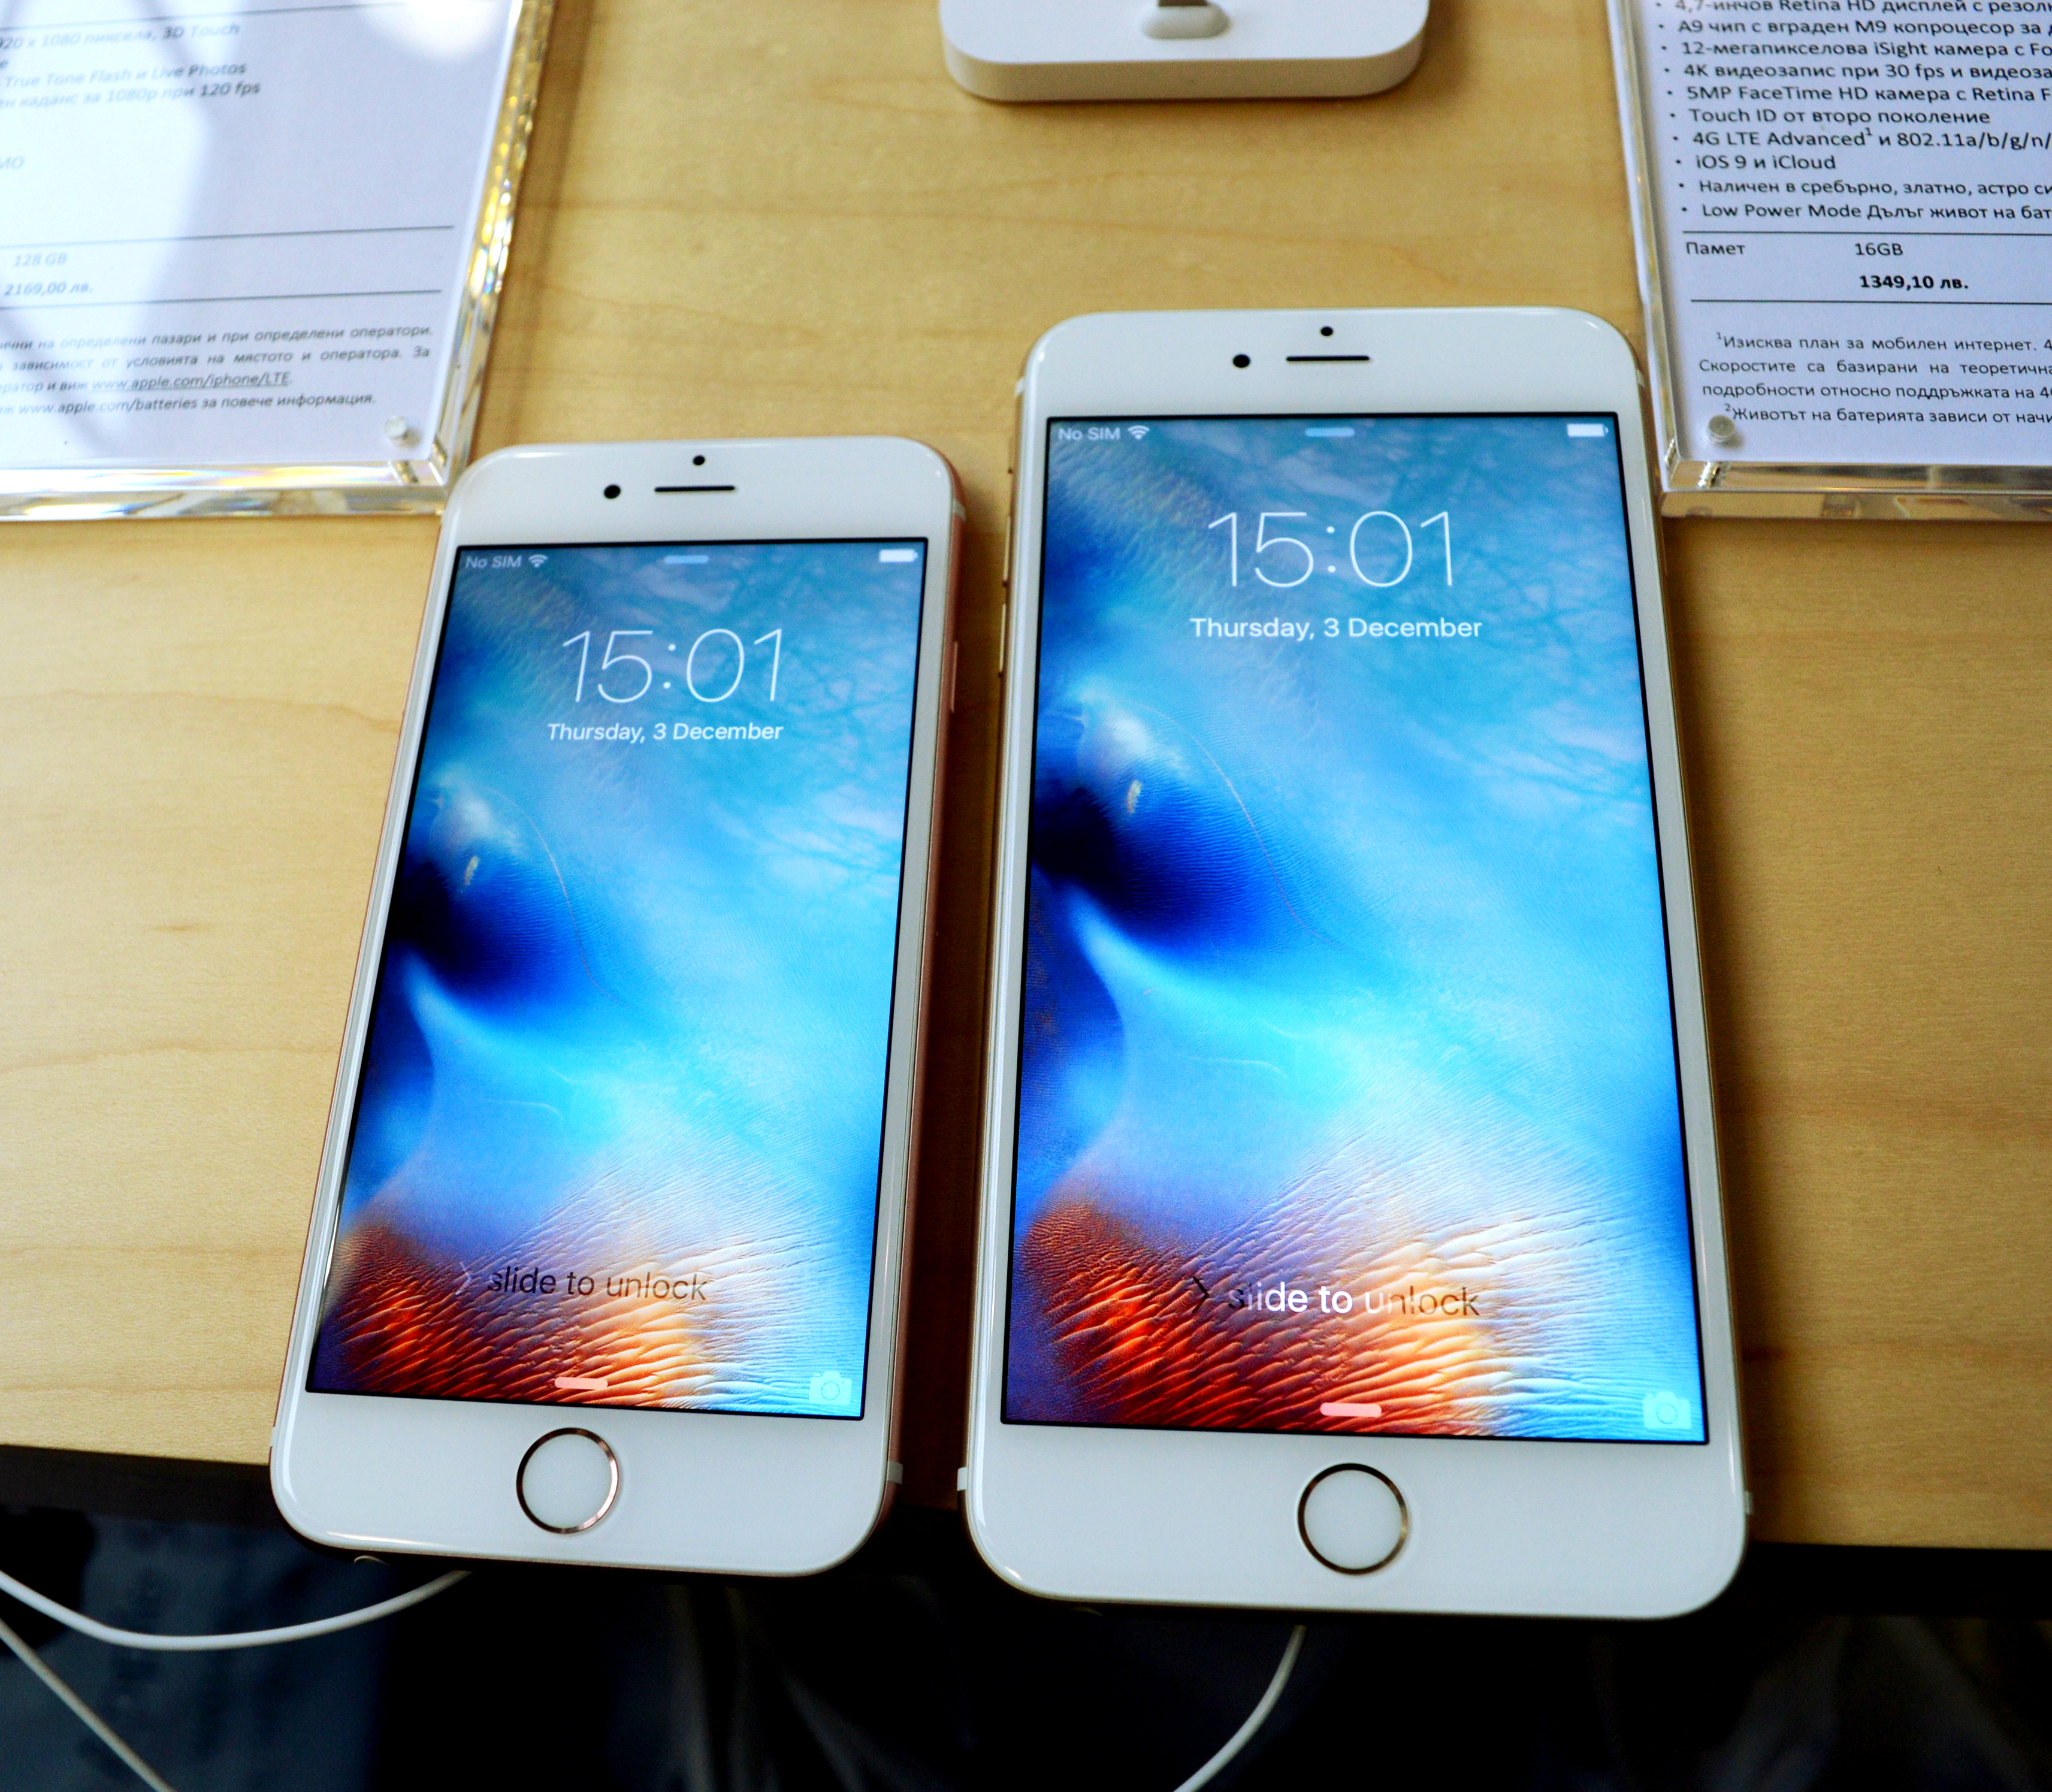 iPhone 6S и iPhone 6S Plus